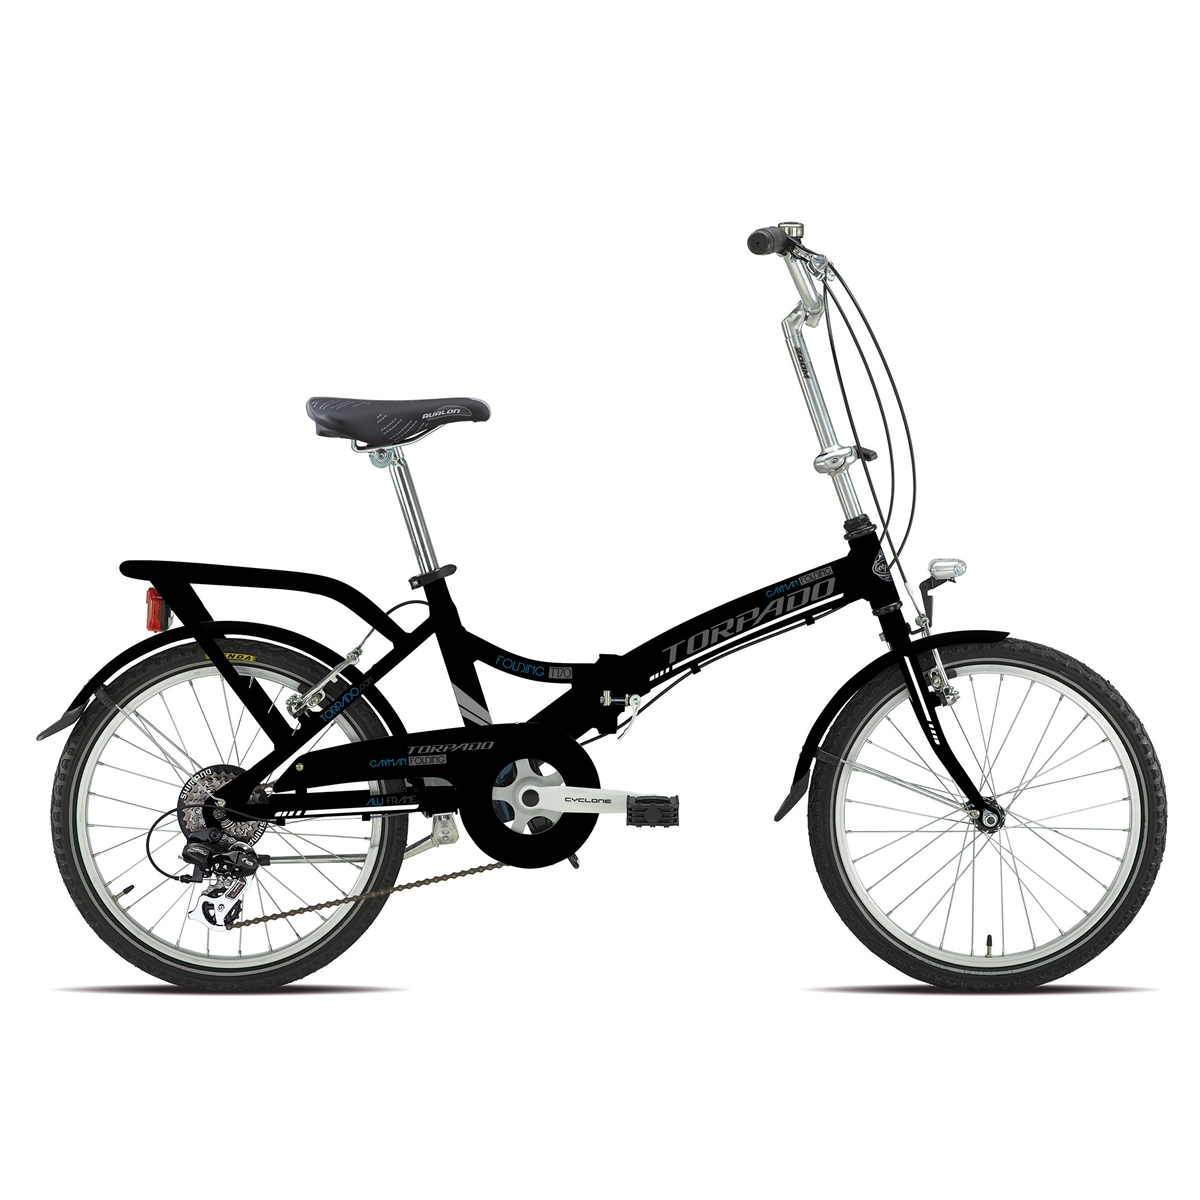 Bicicleta plegable T170 Cayman 20'' alu 6v negra